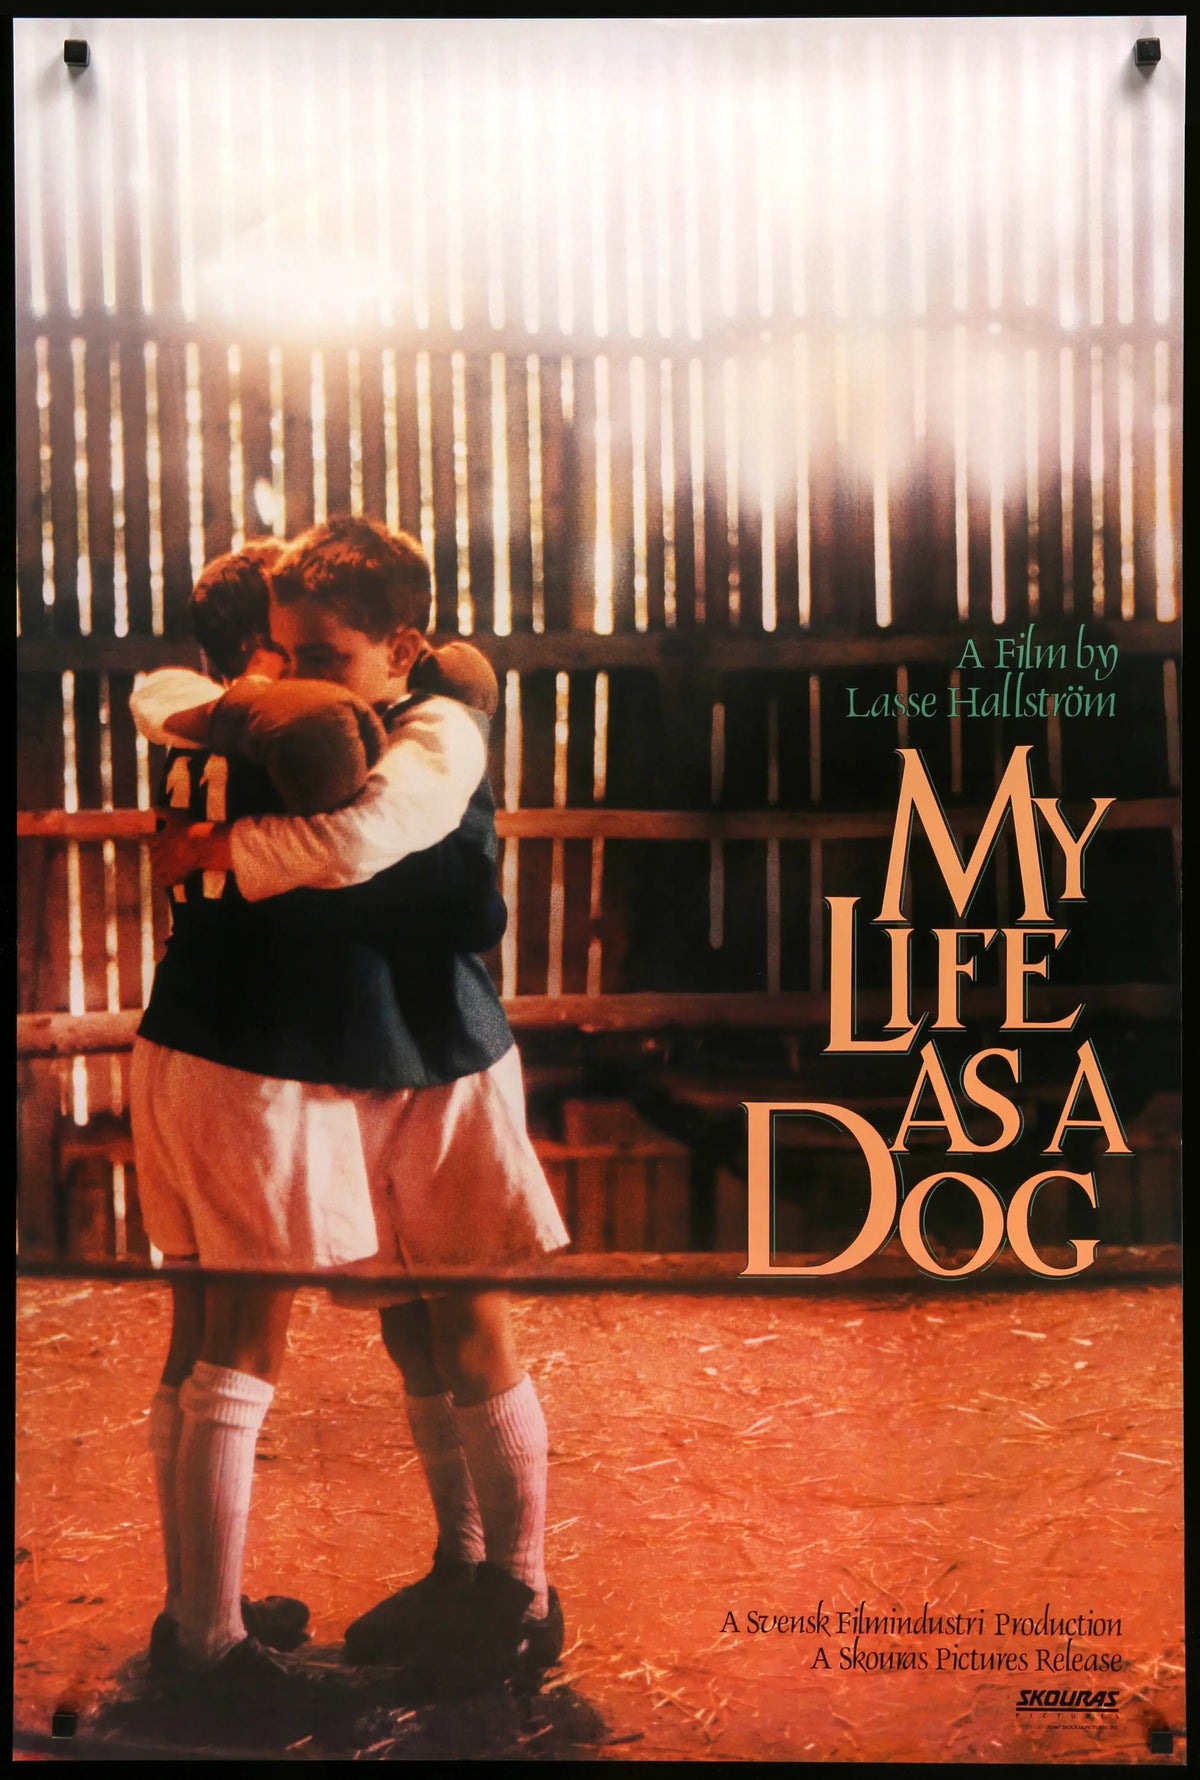 My Life as a Dog (1985) original movie poster for sale at Original Film Art